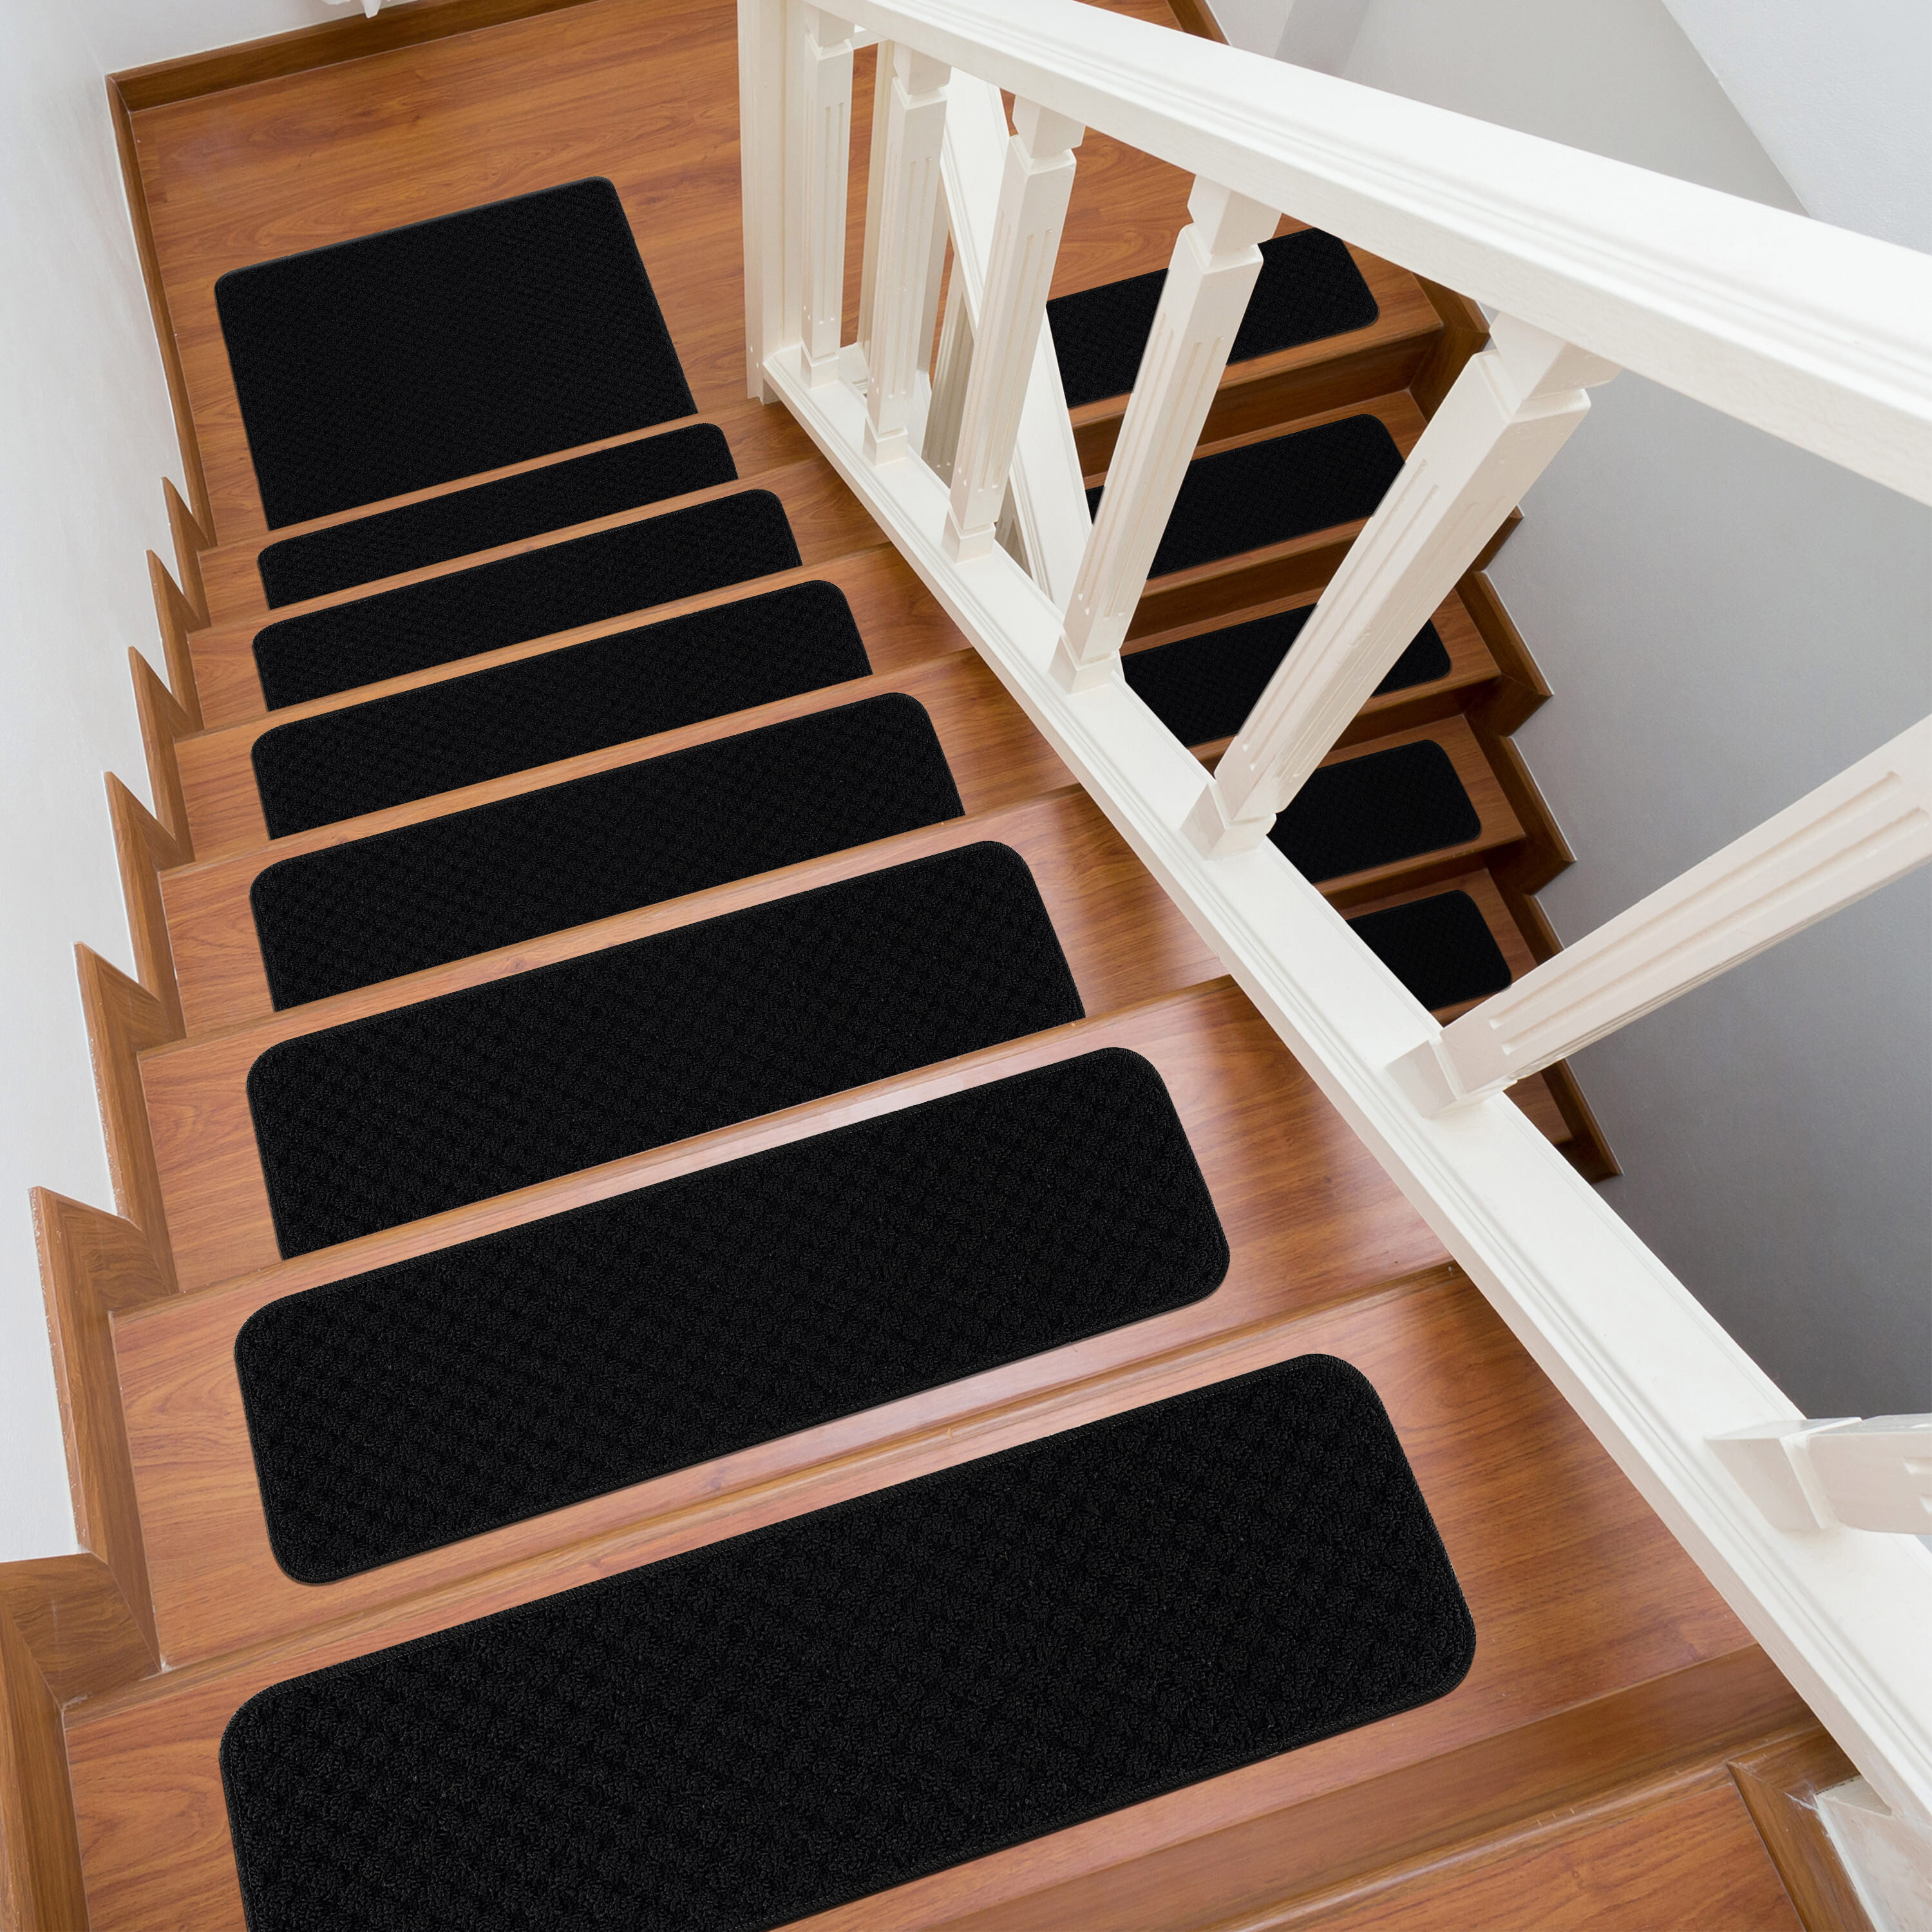 Stair Treads Set Indoor Wood Floors Non Skid Slip Carpet Rugs Pads Grey/Brown 